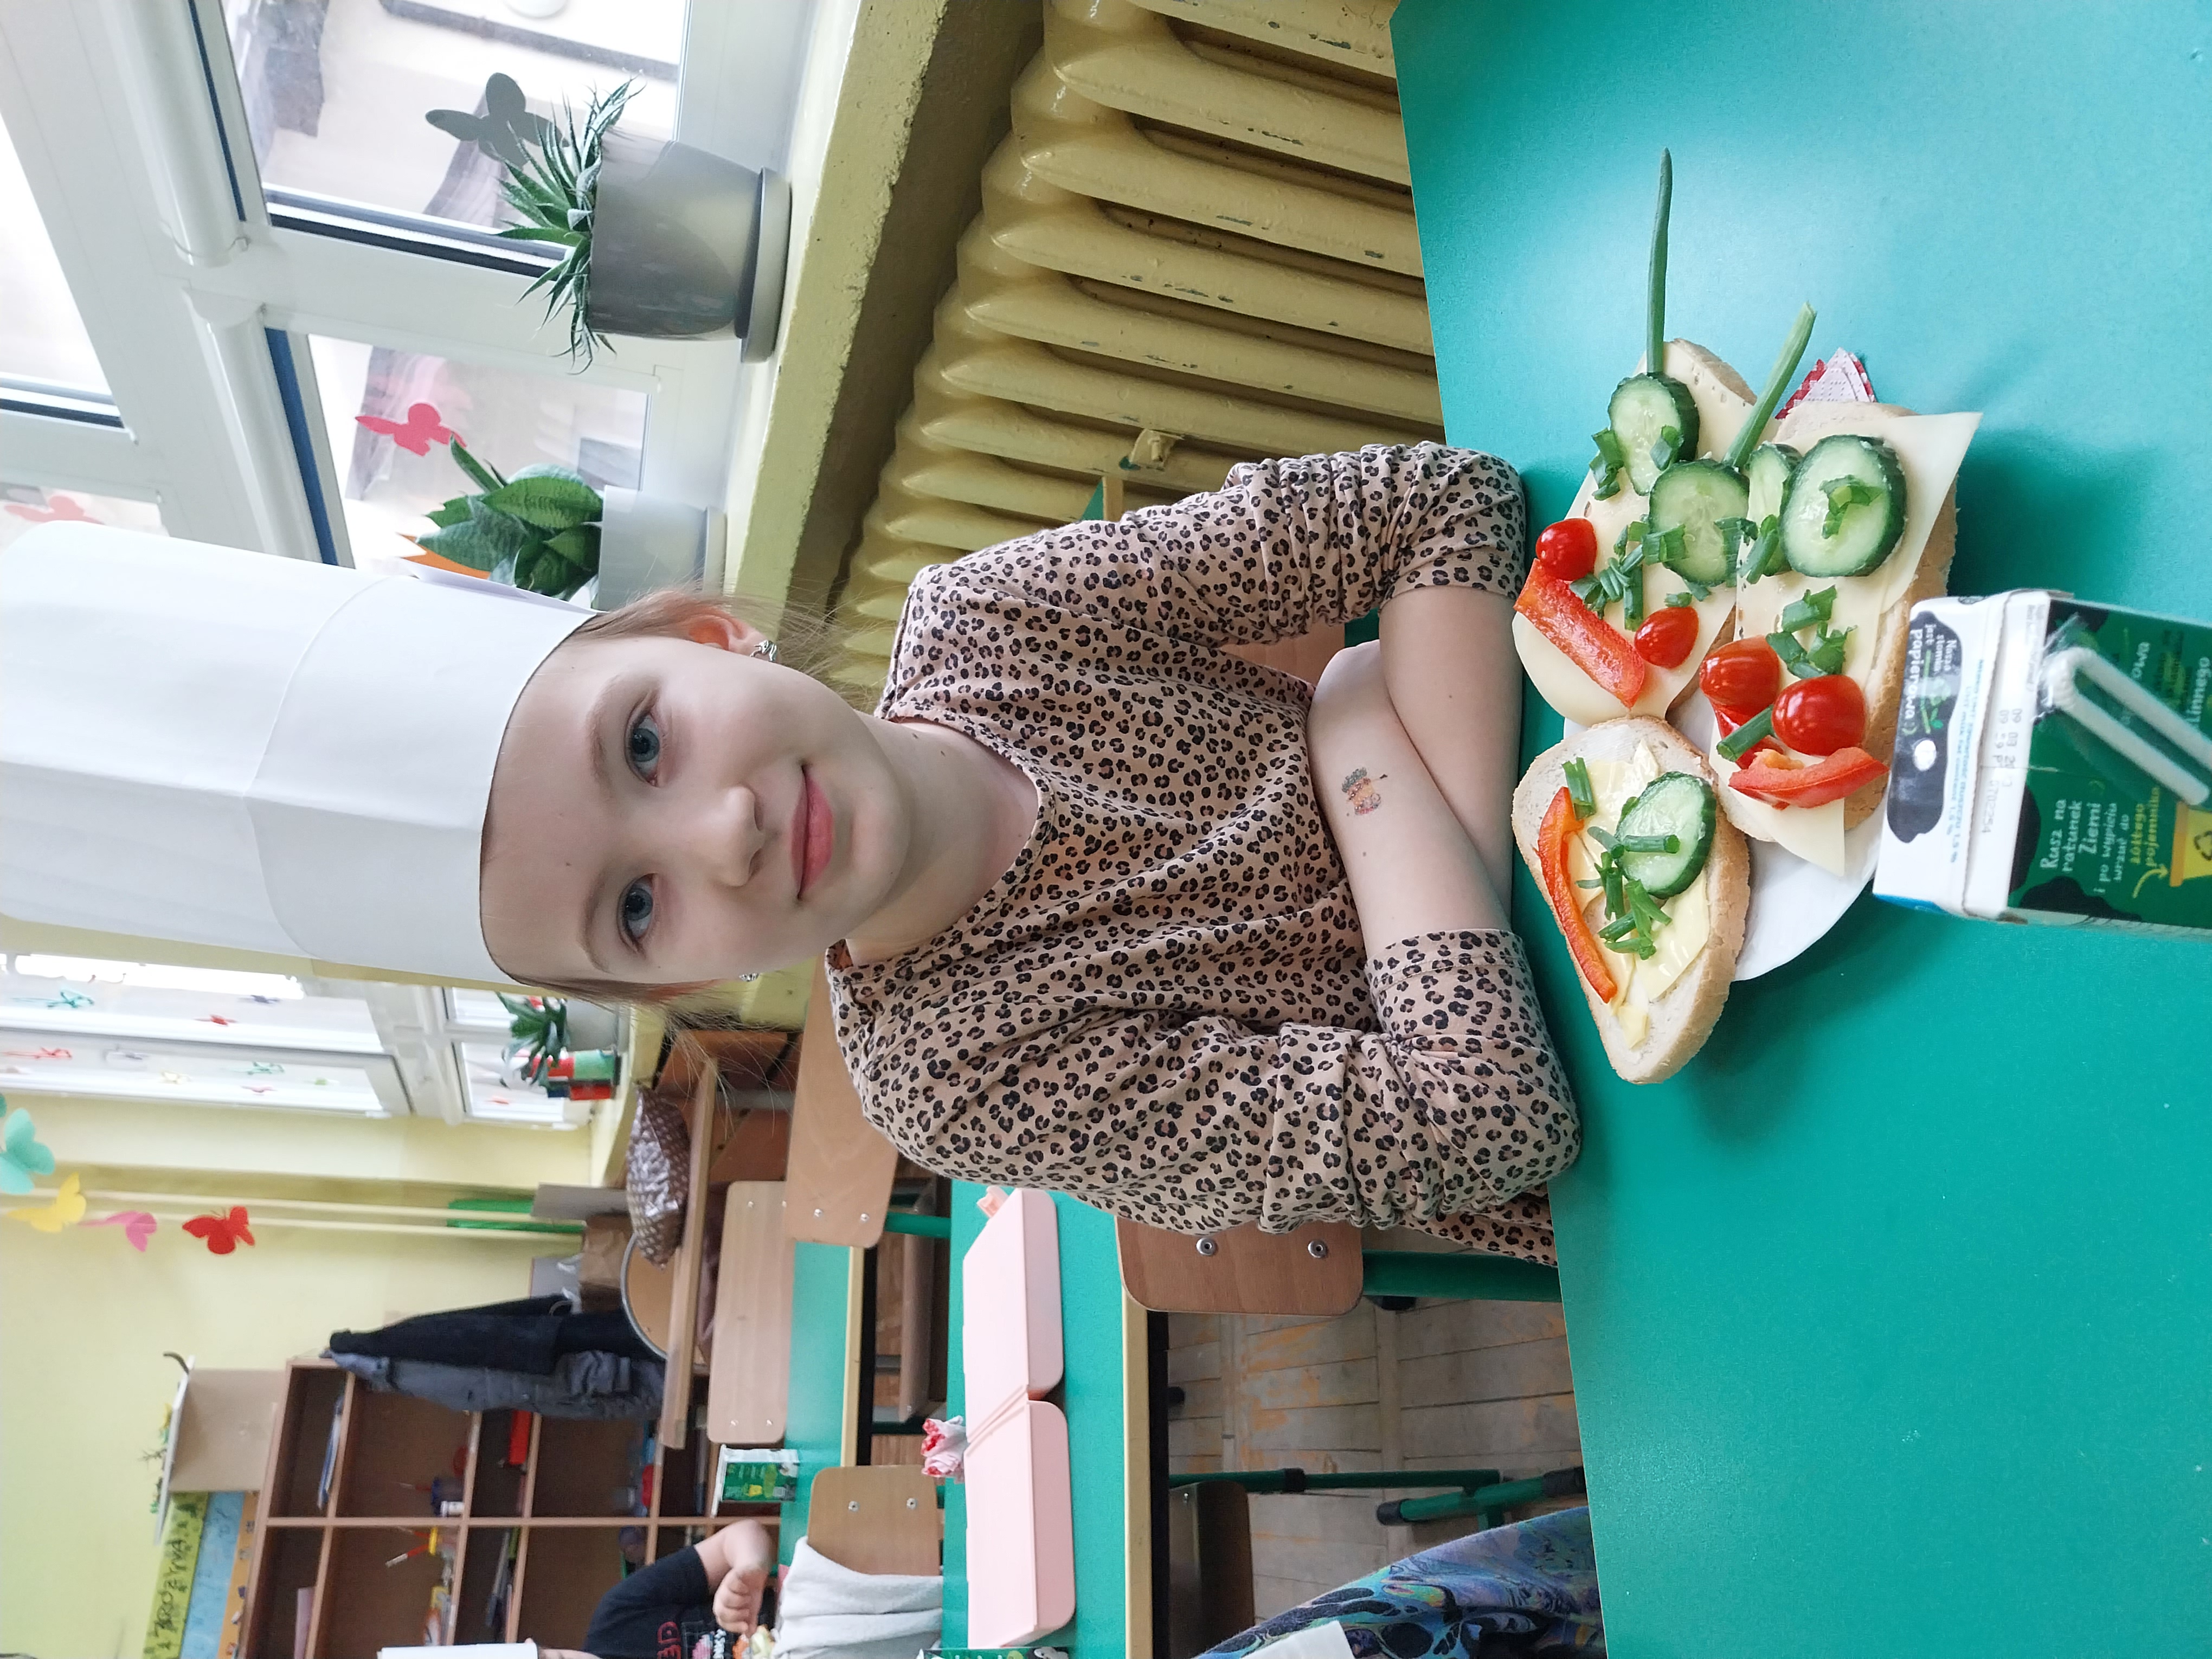 Dziewczynka w czapce kucharskiej siedzi przed talerzem z kanapkami